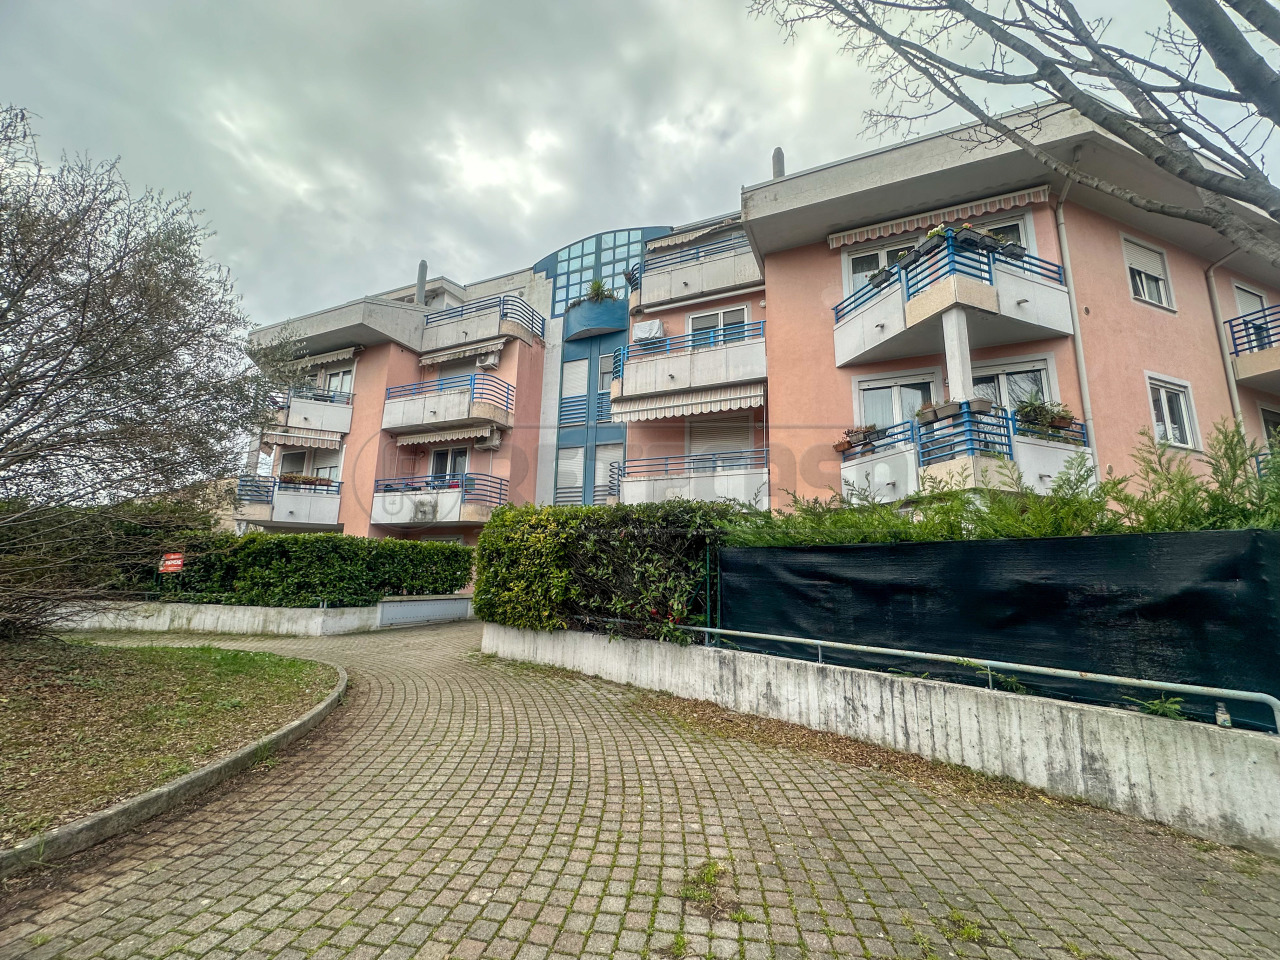 Appartamento in vendita a Ronchi dei Legionari, 4 locali, prezzo € 86.000 | PortaleAgenzieImmobiliari.it